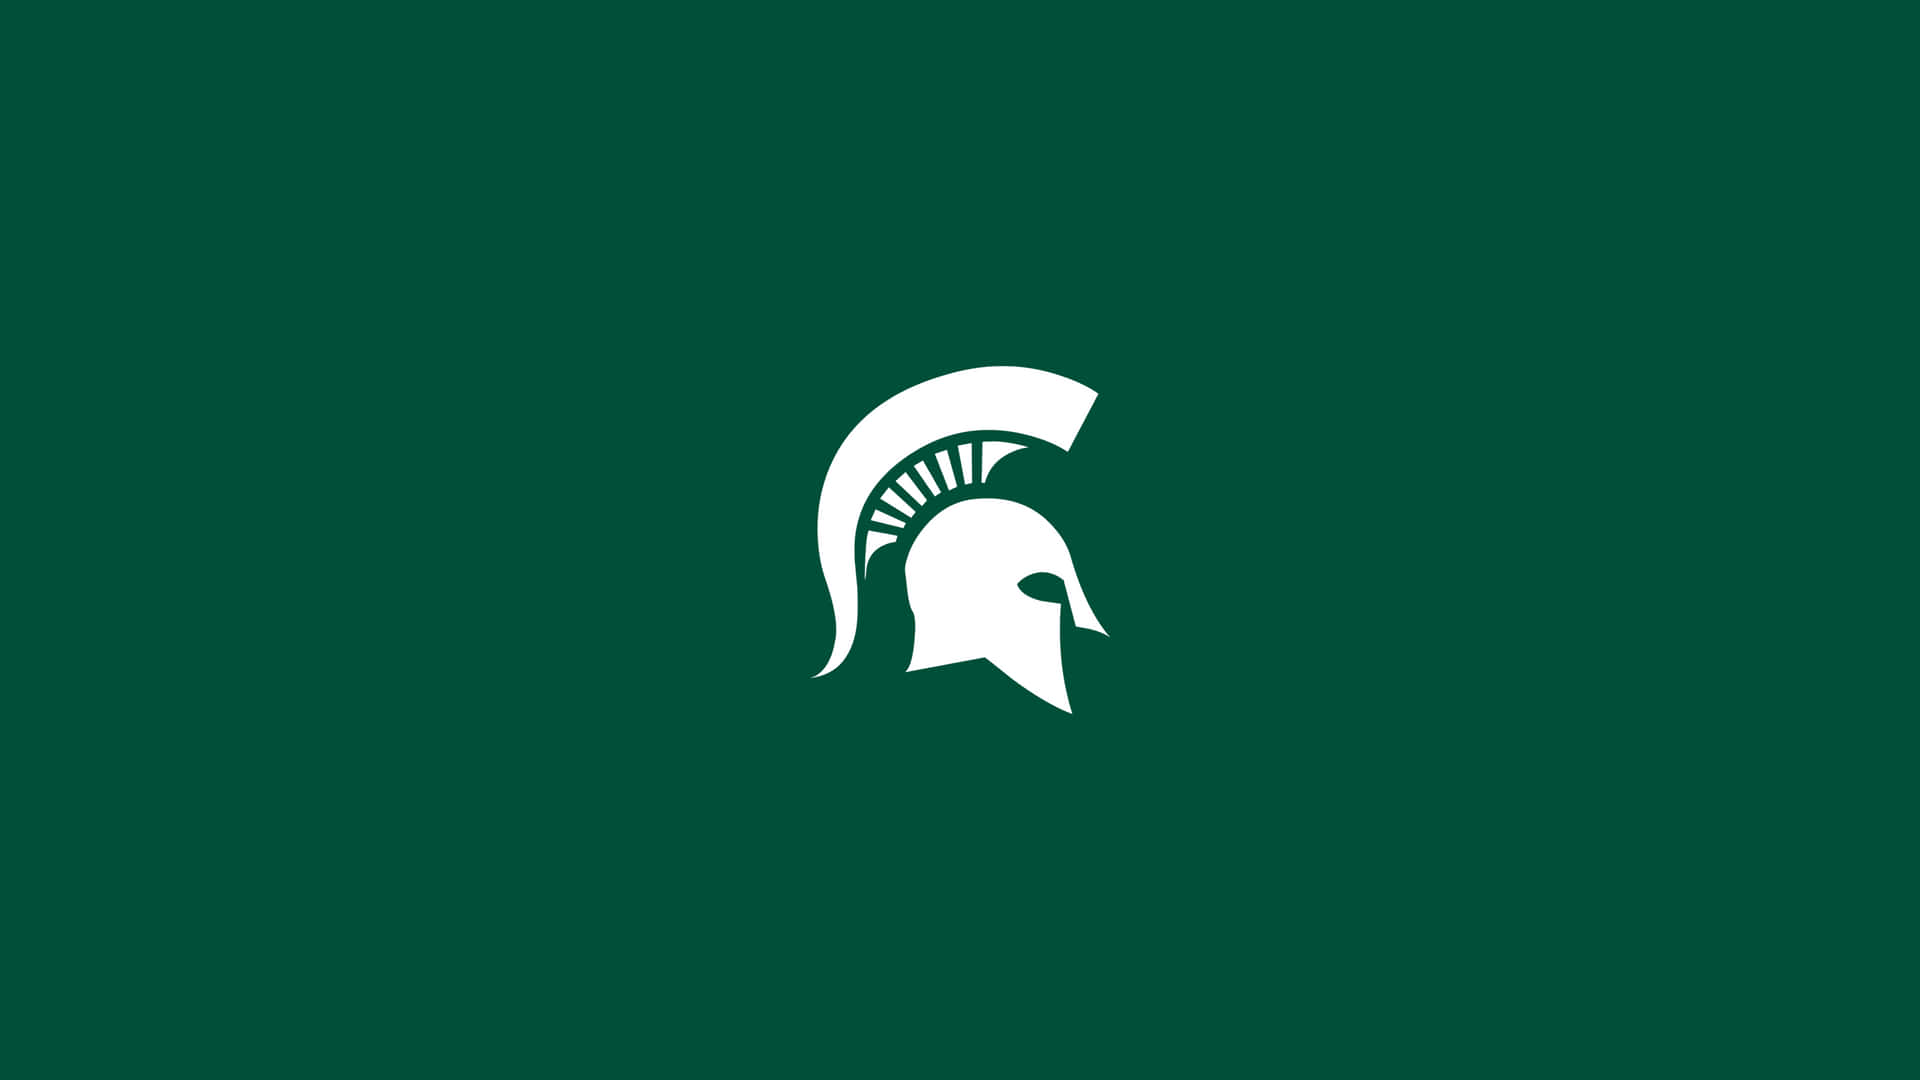 Logode Los Spartans De La Universidad De Michigan En Un Fondo Verde. Fondo de pantalla